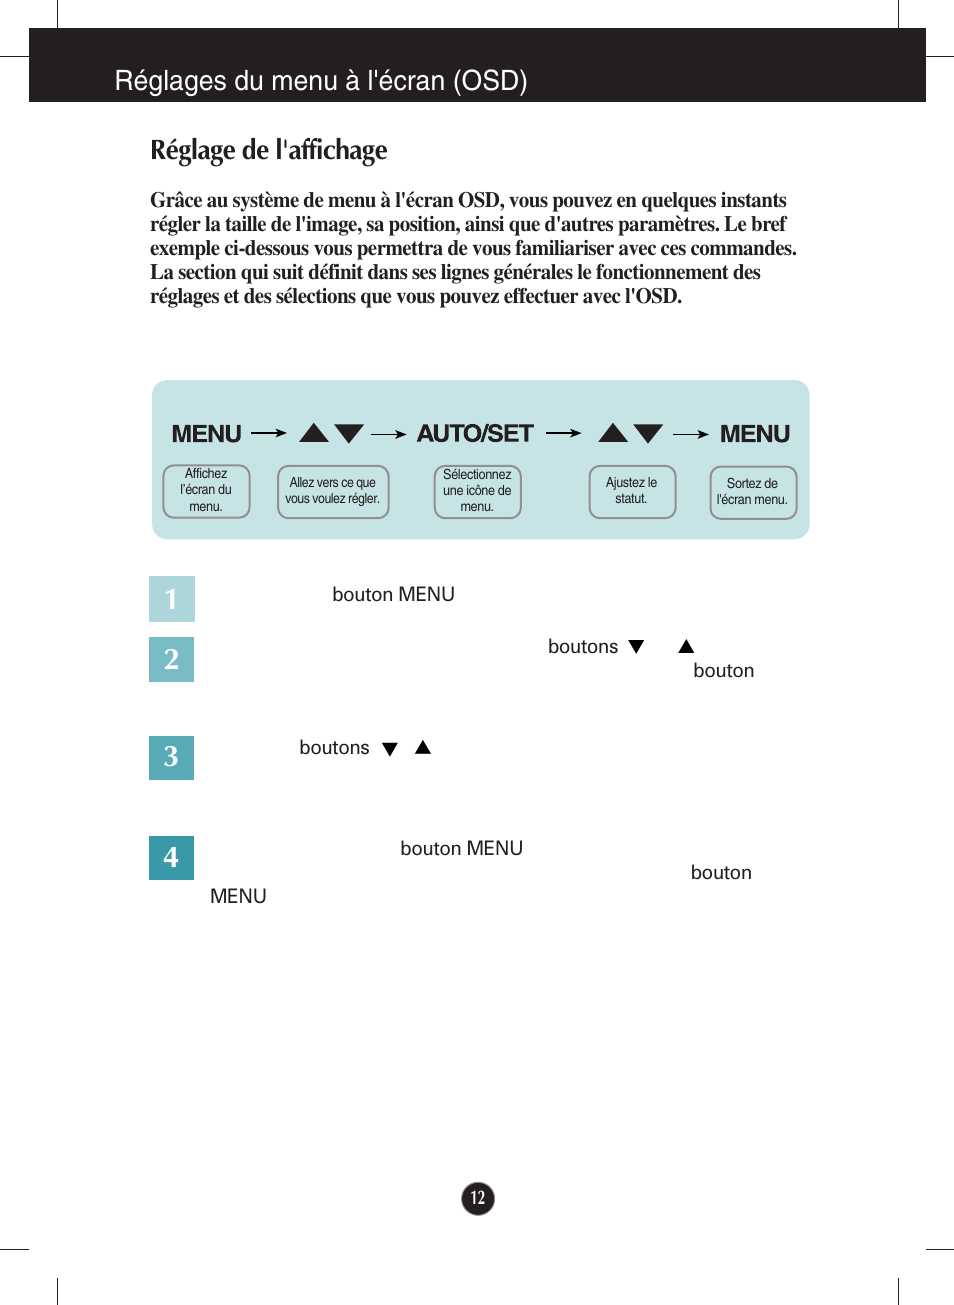 Réglages du menu à l'écran (osd), Réglage de l'affichage | LG W2243S-PF Manuel d'utilisation | Page 13 / 34